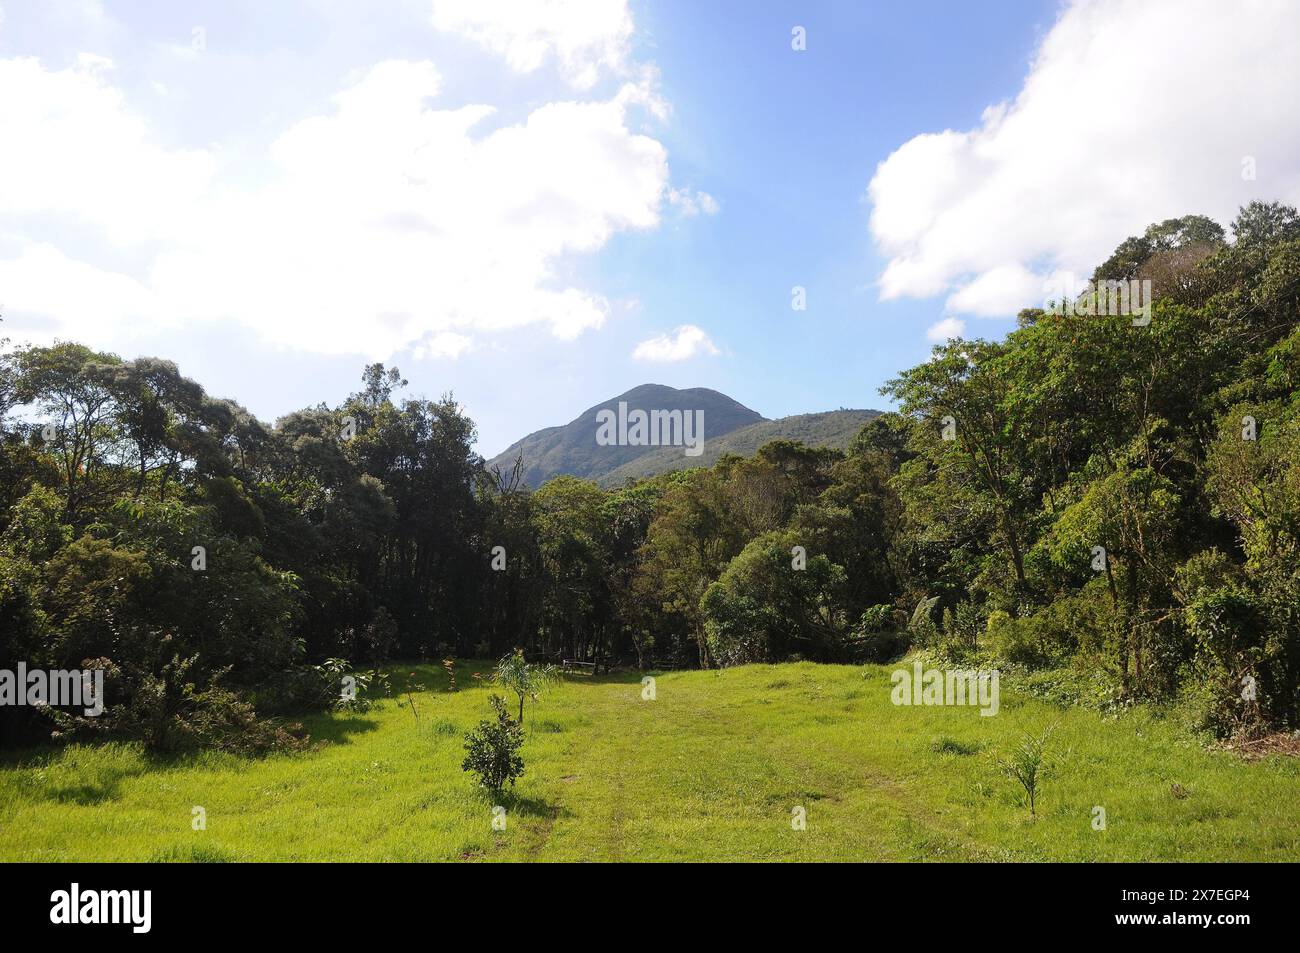 Parco statale di Três Picos. Situato nella Serra do Mar, nella regione montuosa della città di Nova Friburgo, nello stato di Rio de Janeiro Foto Stock